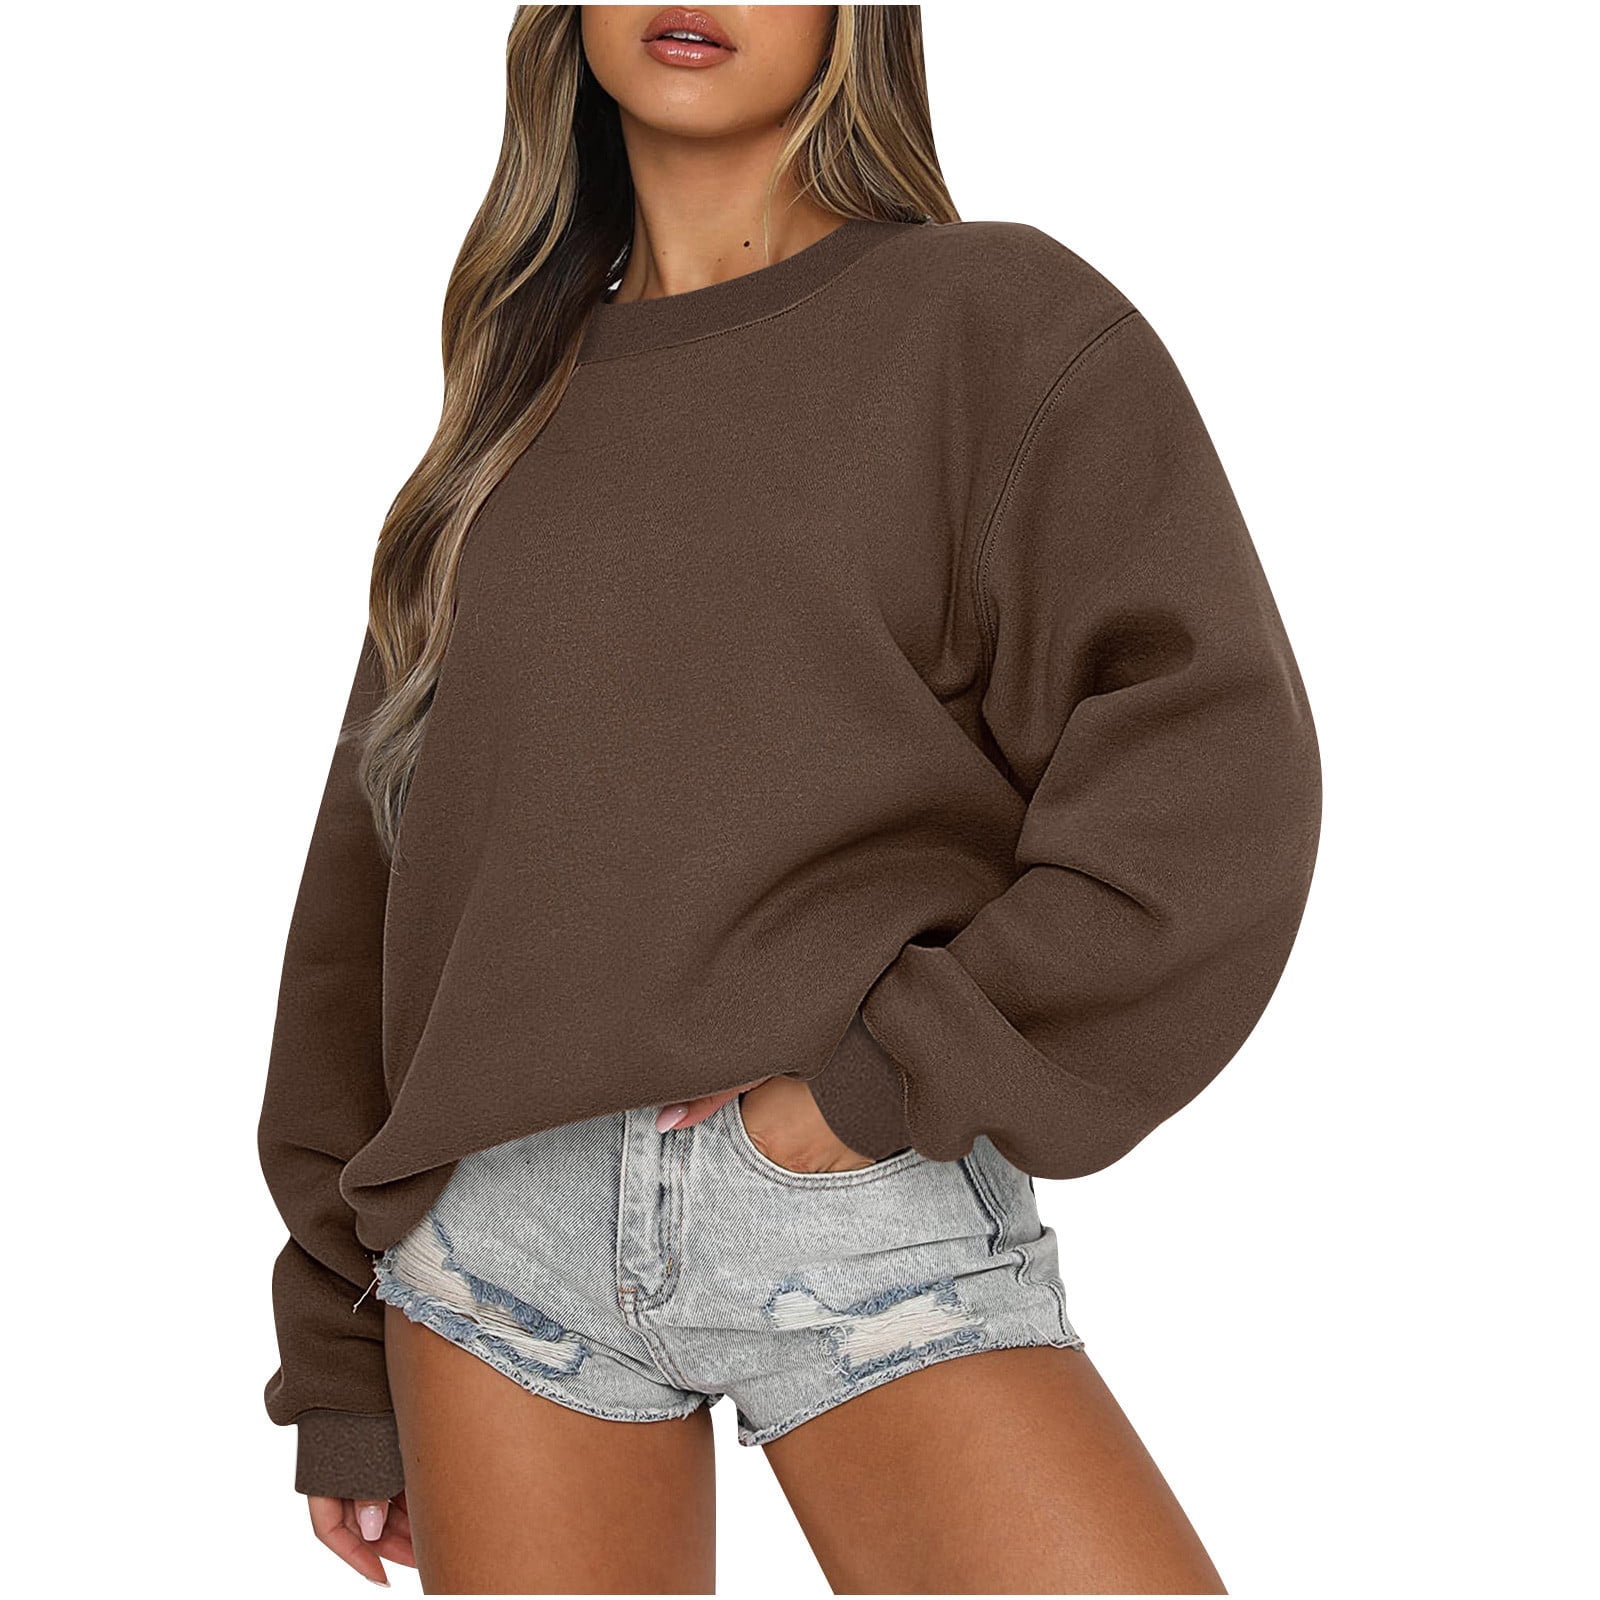 Oversized Sweatshirts for Women Fleece Hoodies Crewneck Pullover